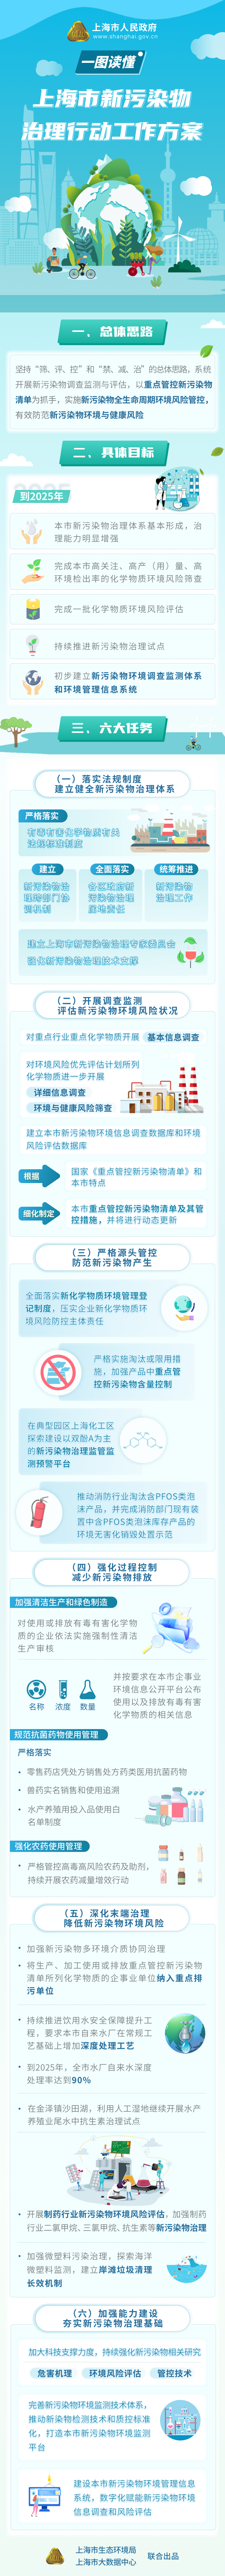 一图读懂《上海市新污染物治理行动工作方案》.png